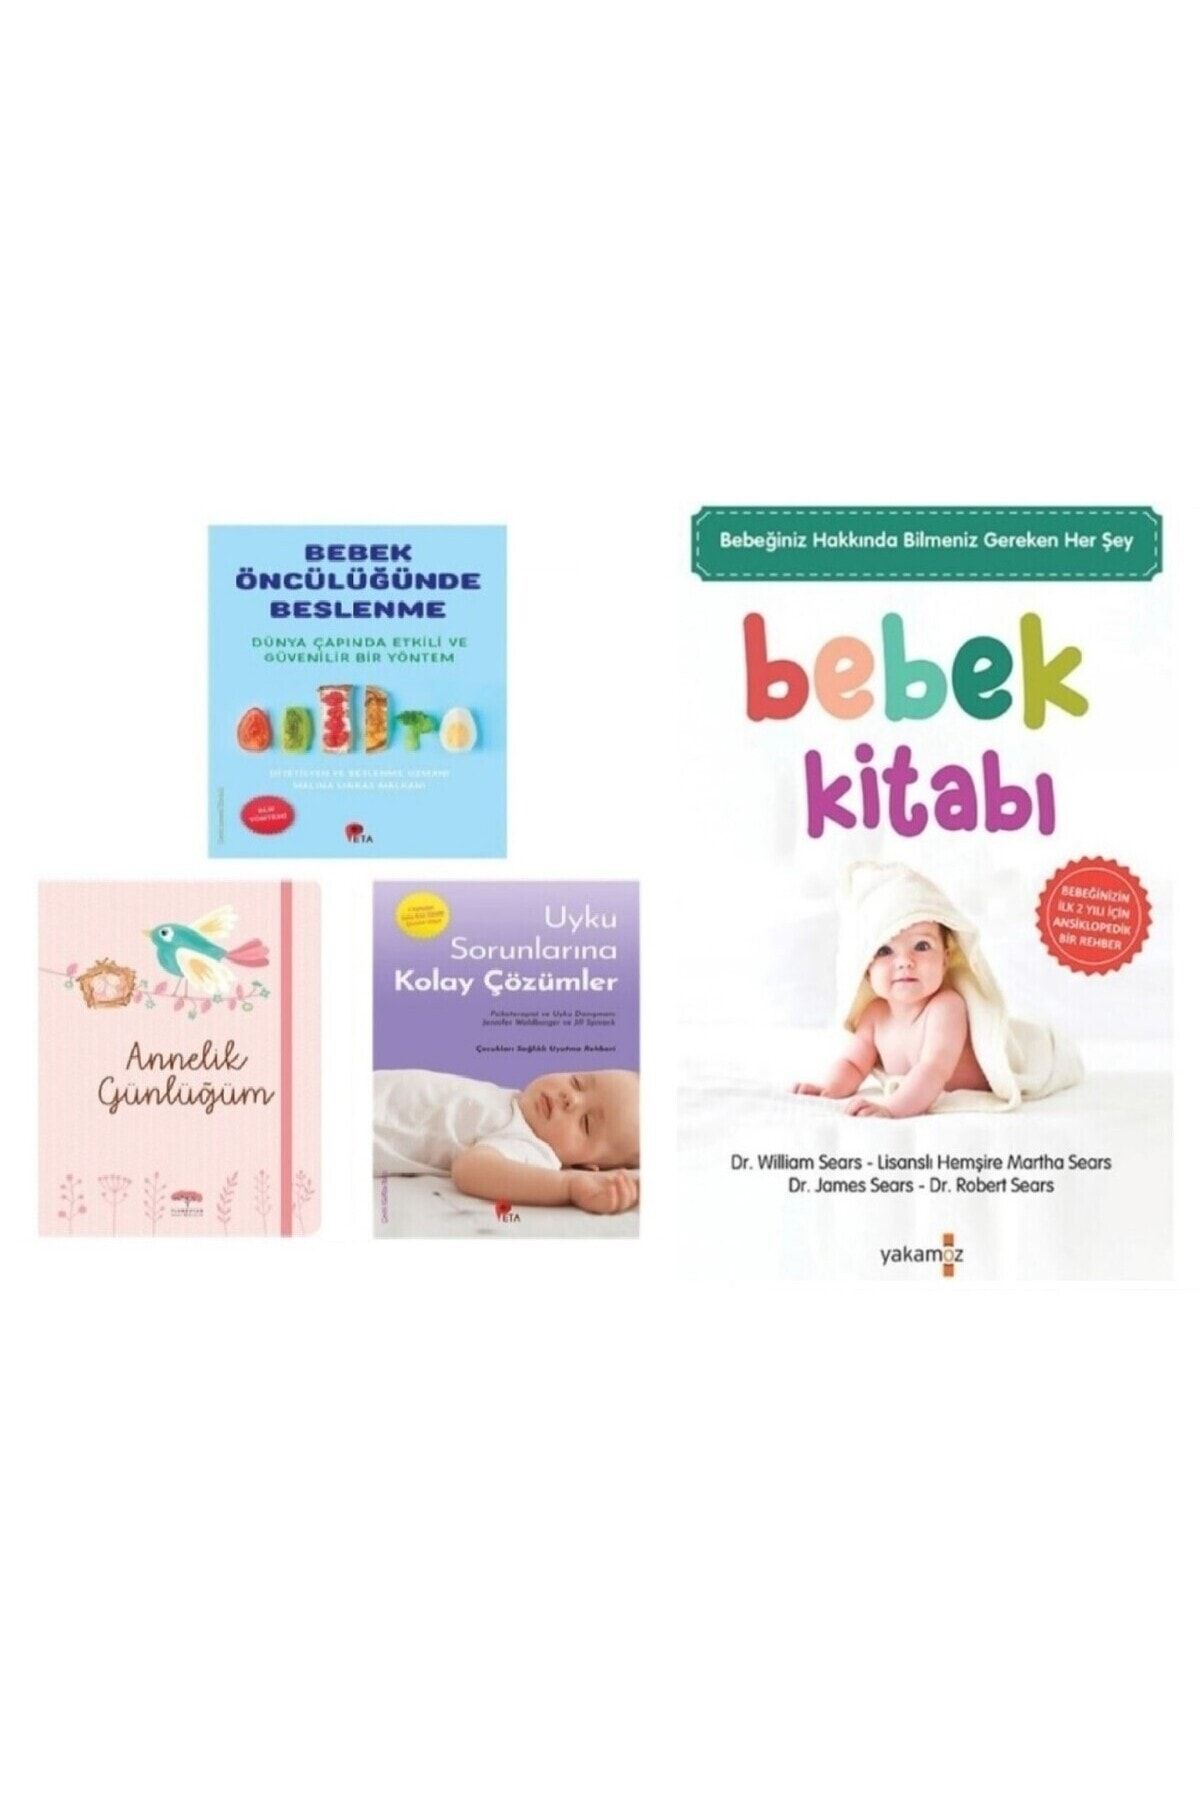 Yakamoz Yayınları Annelik Günlüğüm - Bebek Kitabı - Bebek Öncülüğünde Beslenme - Uyku Sorunlarına Kolay Çözüm